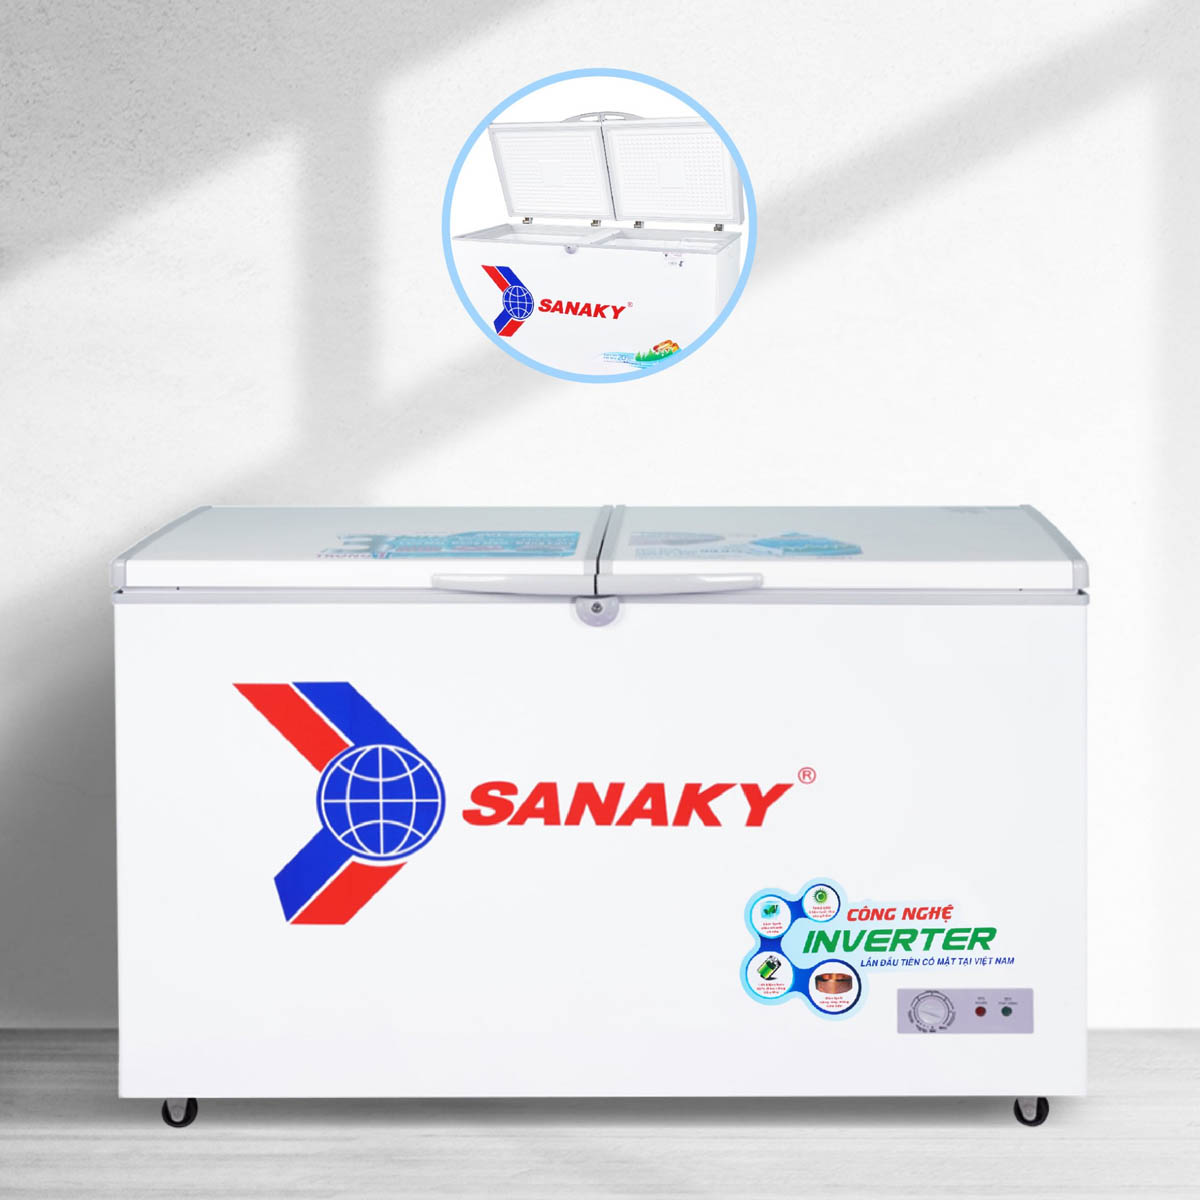 Thiết kế thông minh của Tủ Đông Sanaky 305 Lít VH-4099A3